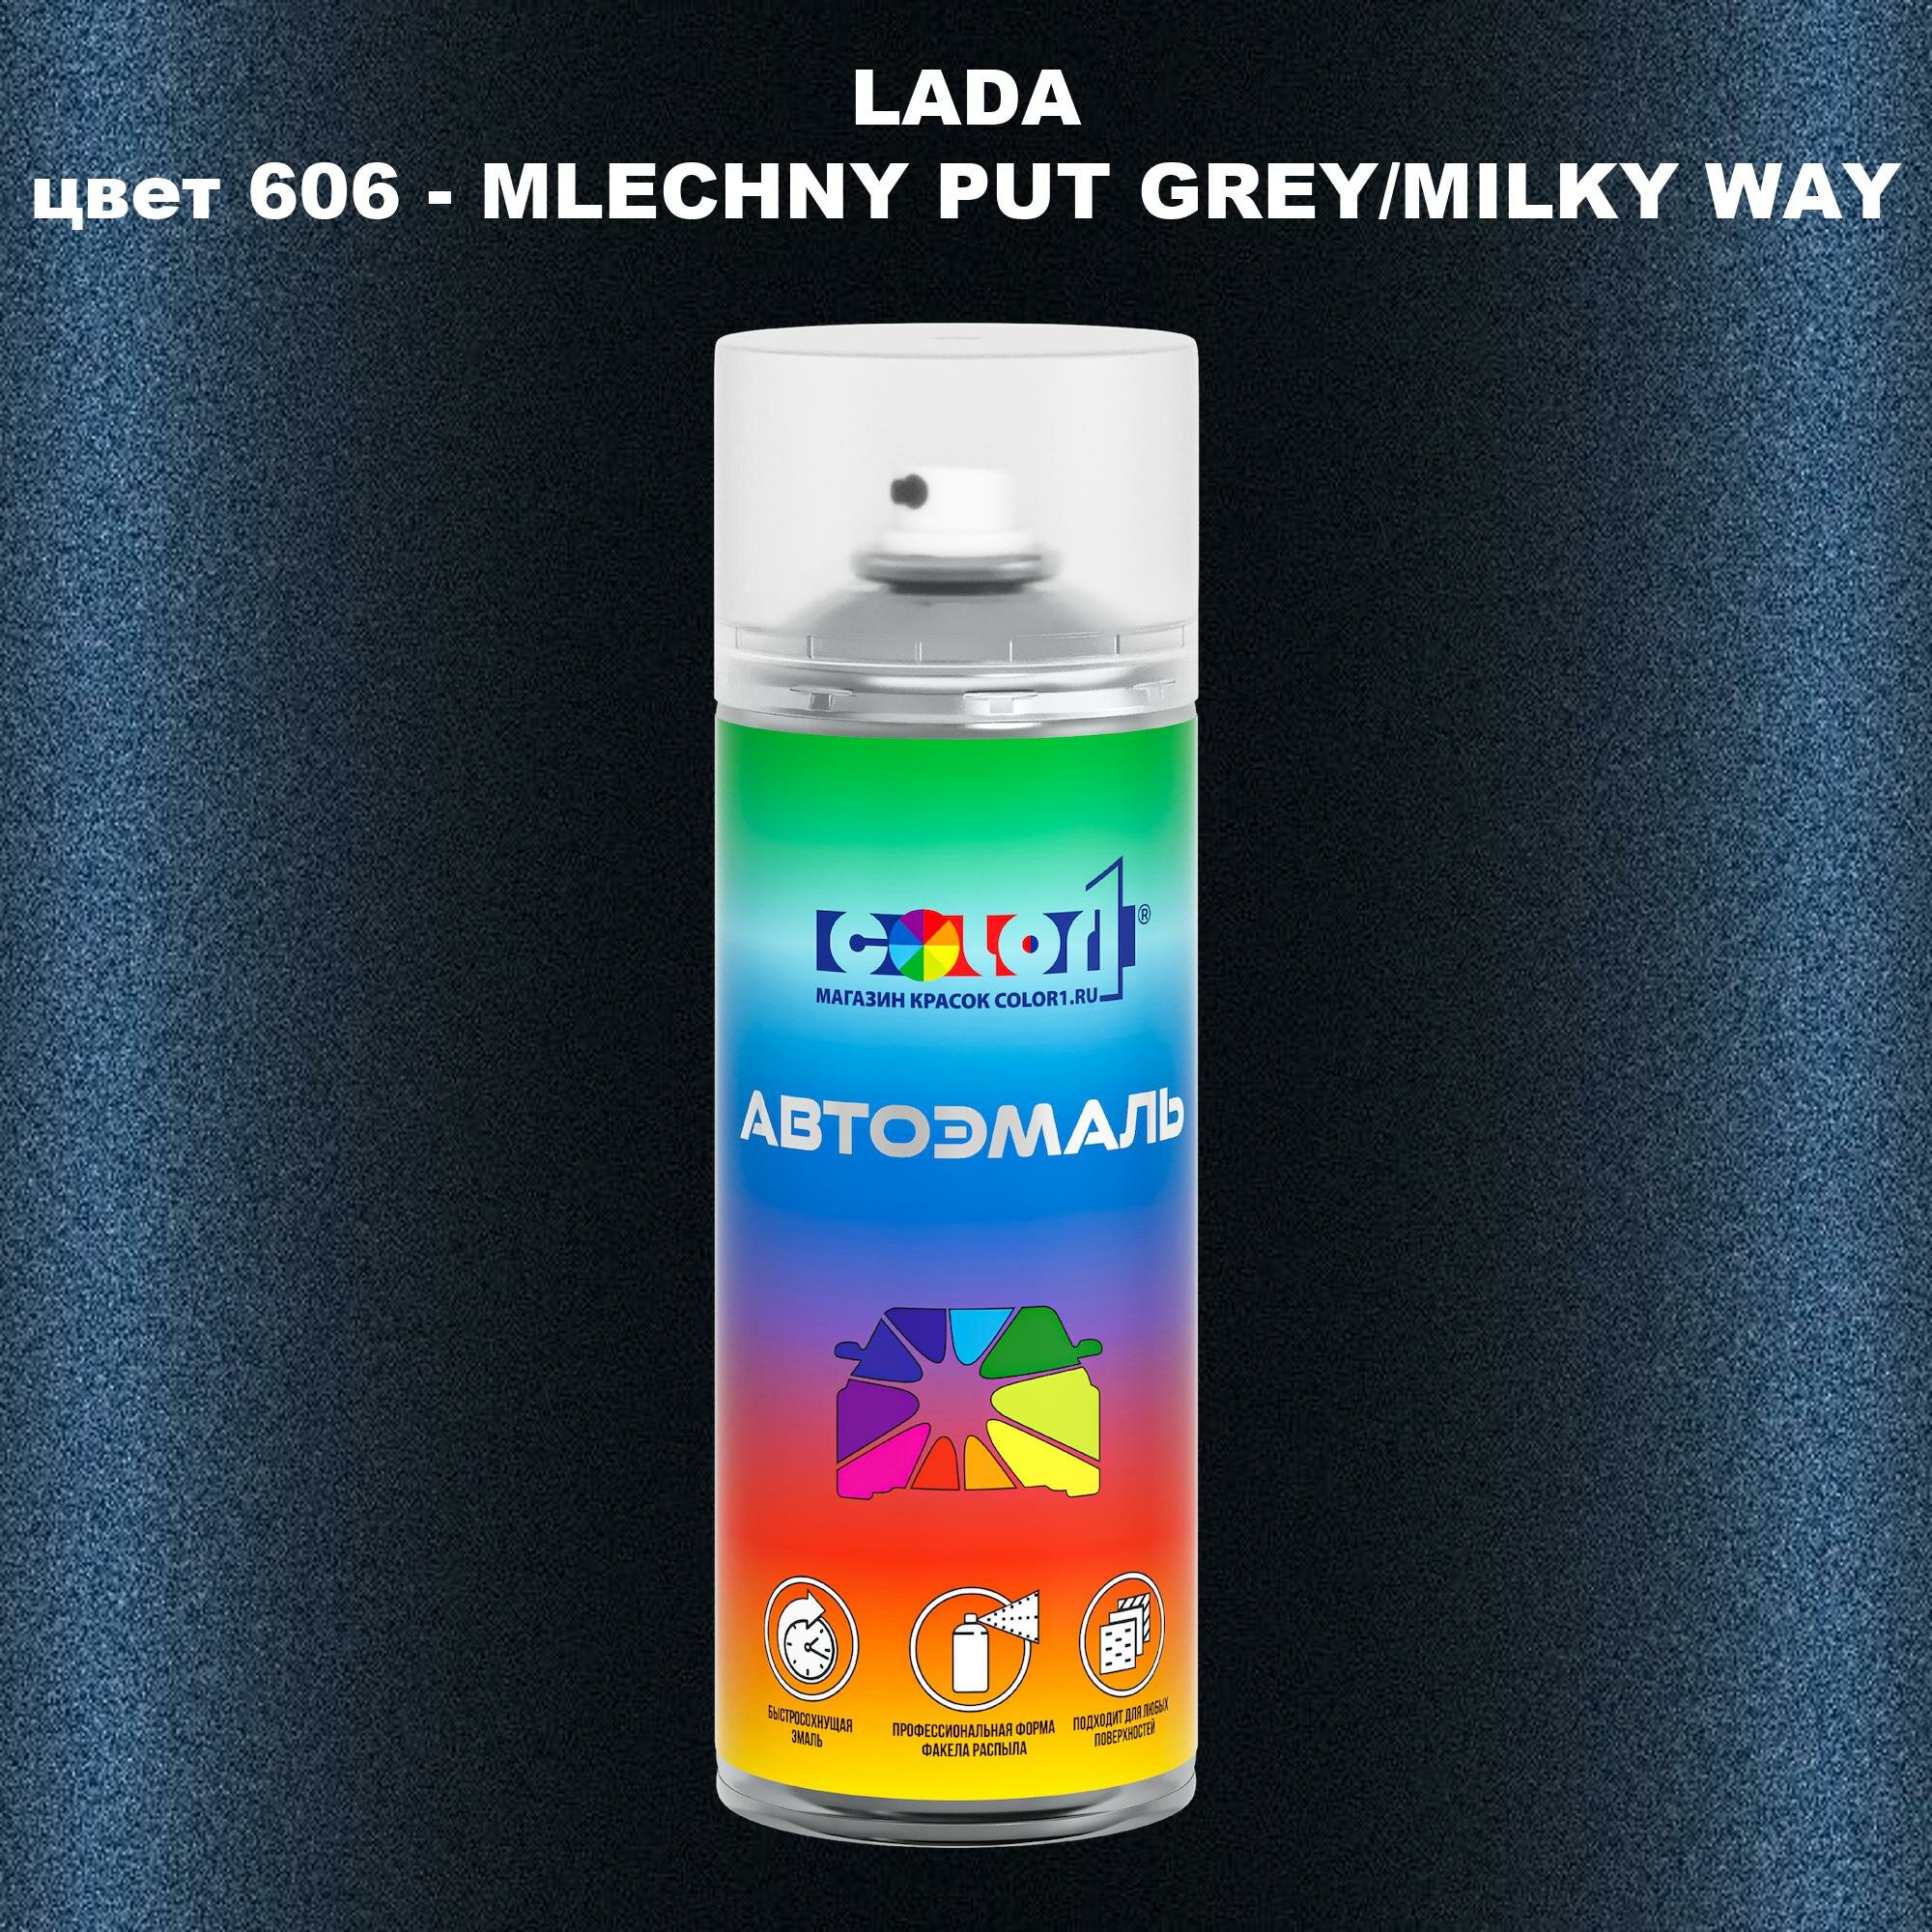 Аэрозольная краска COLOR1 для LADA, цвет 606 - MLECHNY PUT GREY/MILKY WAY